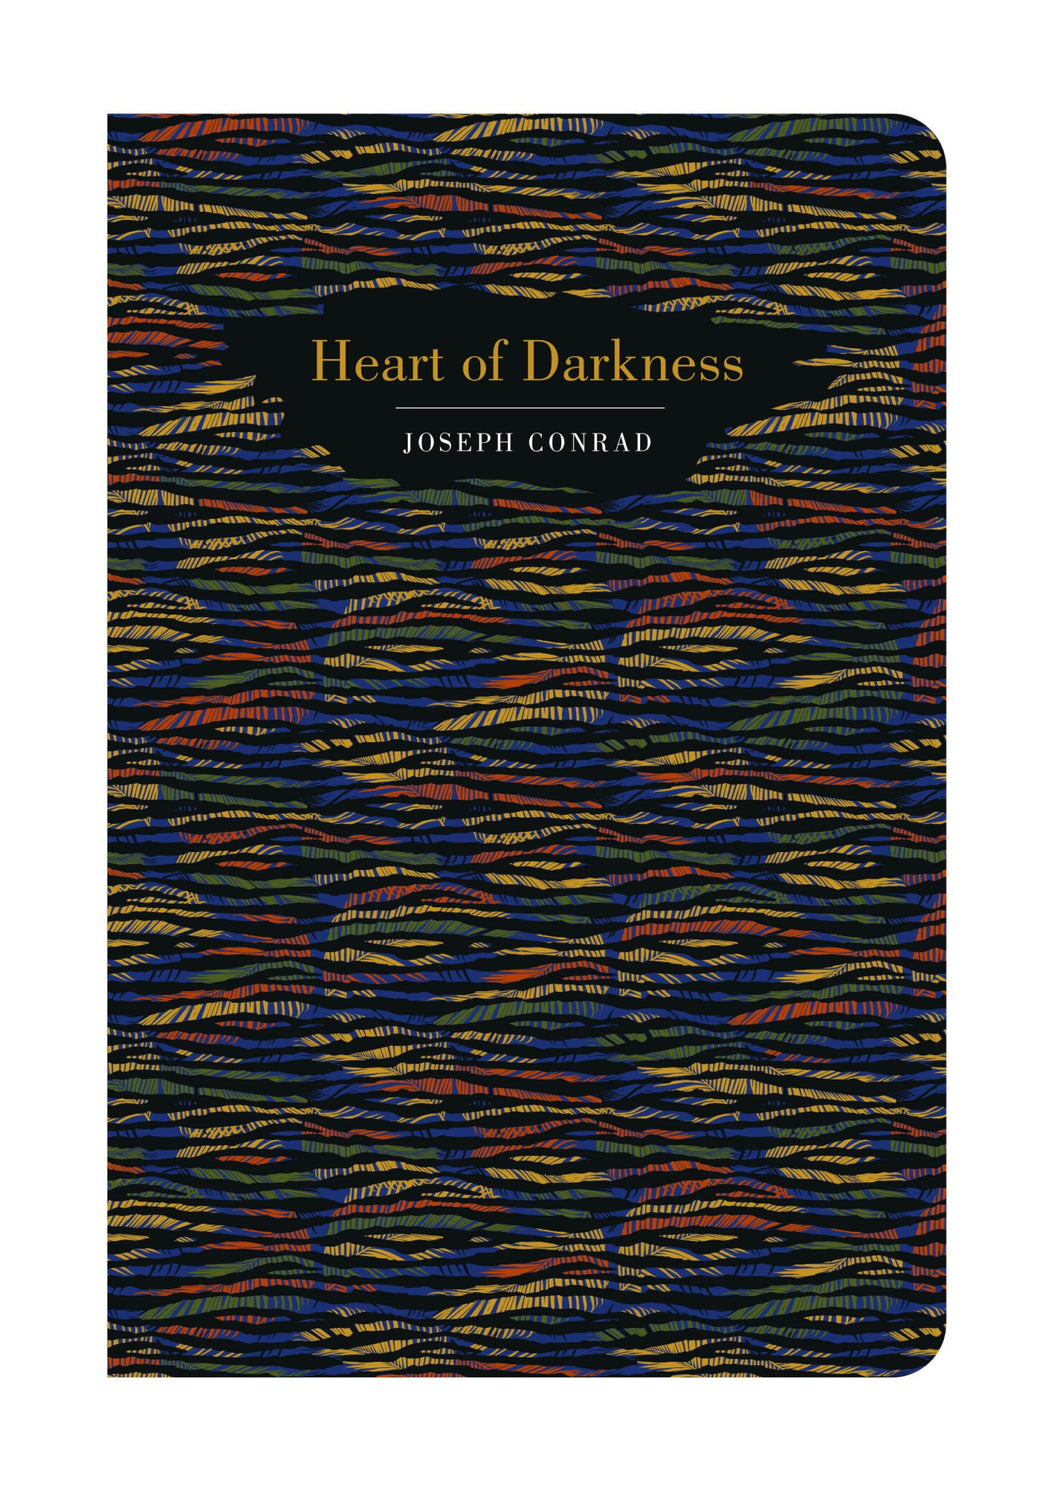 Heart of Darkness, Joseph Conrad (Chiltern Classics)